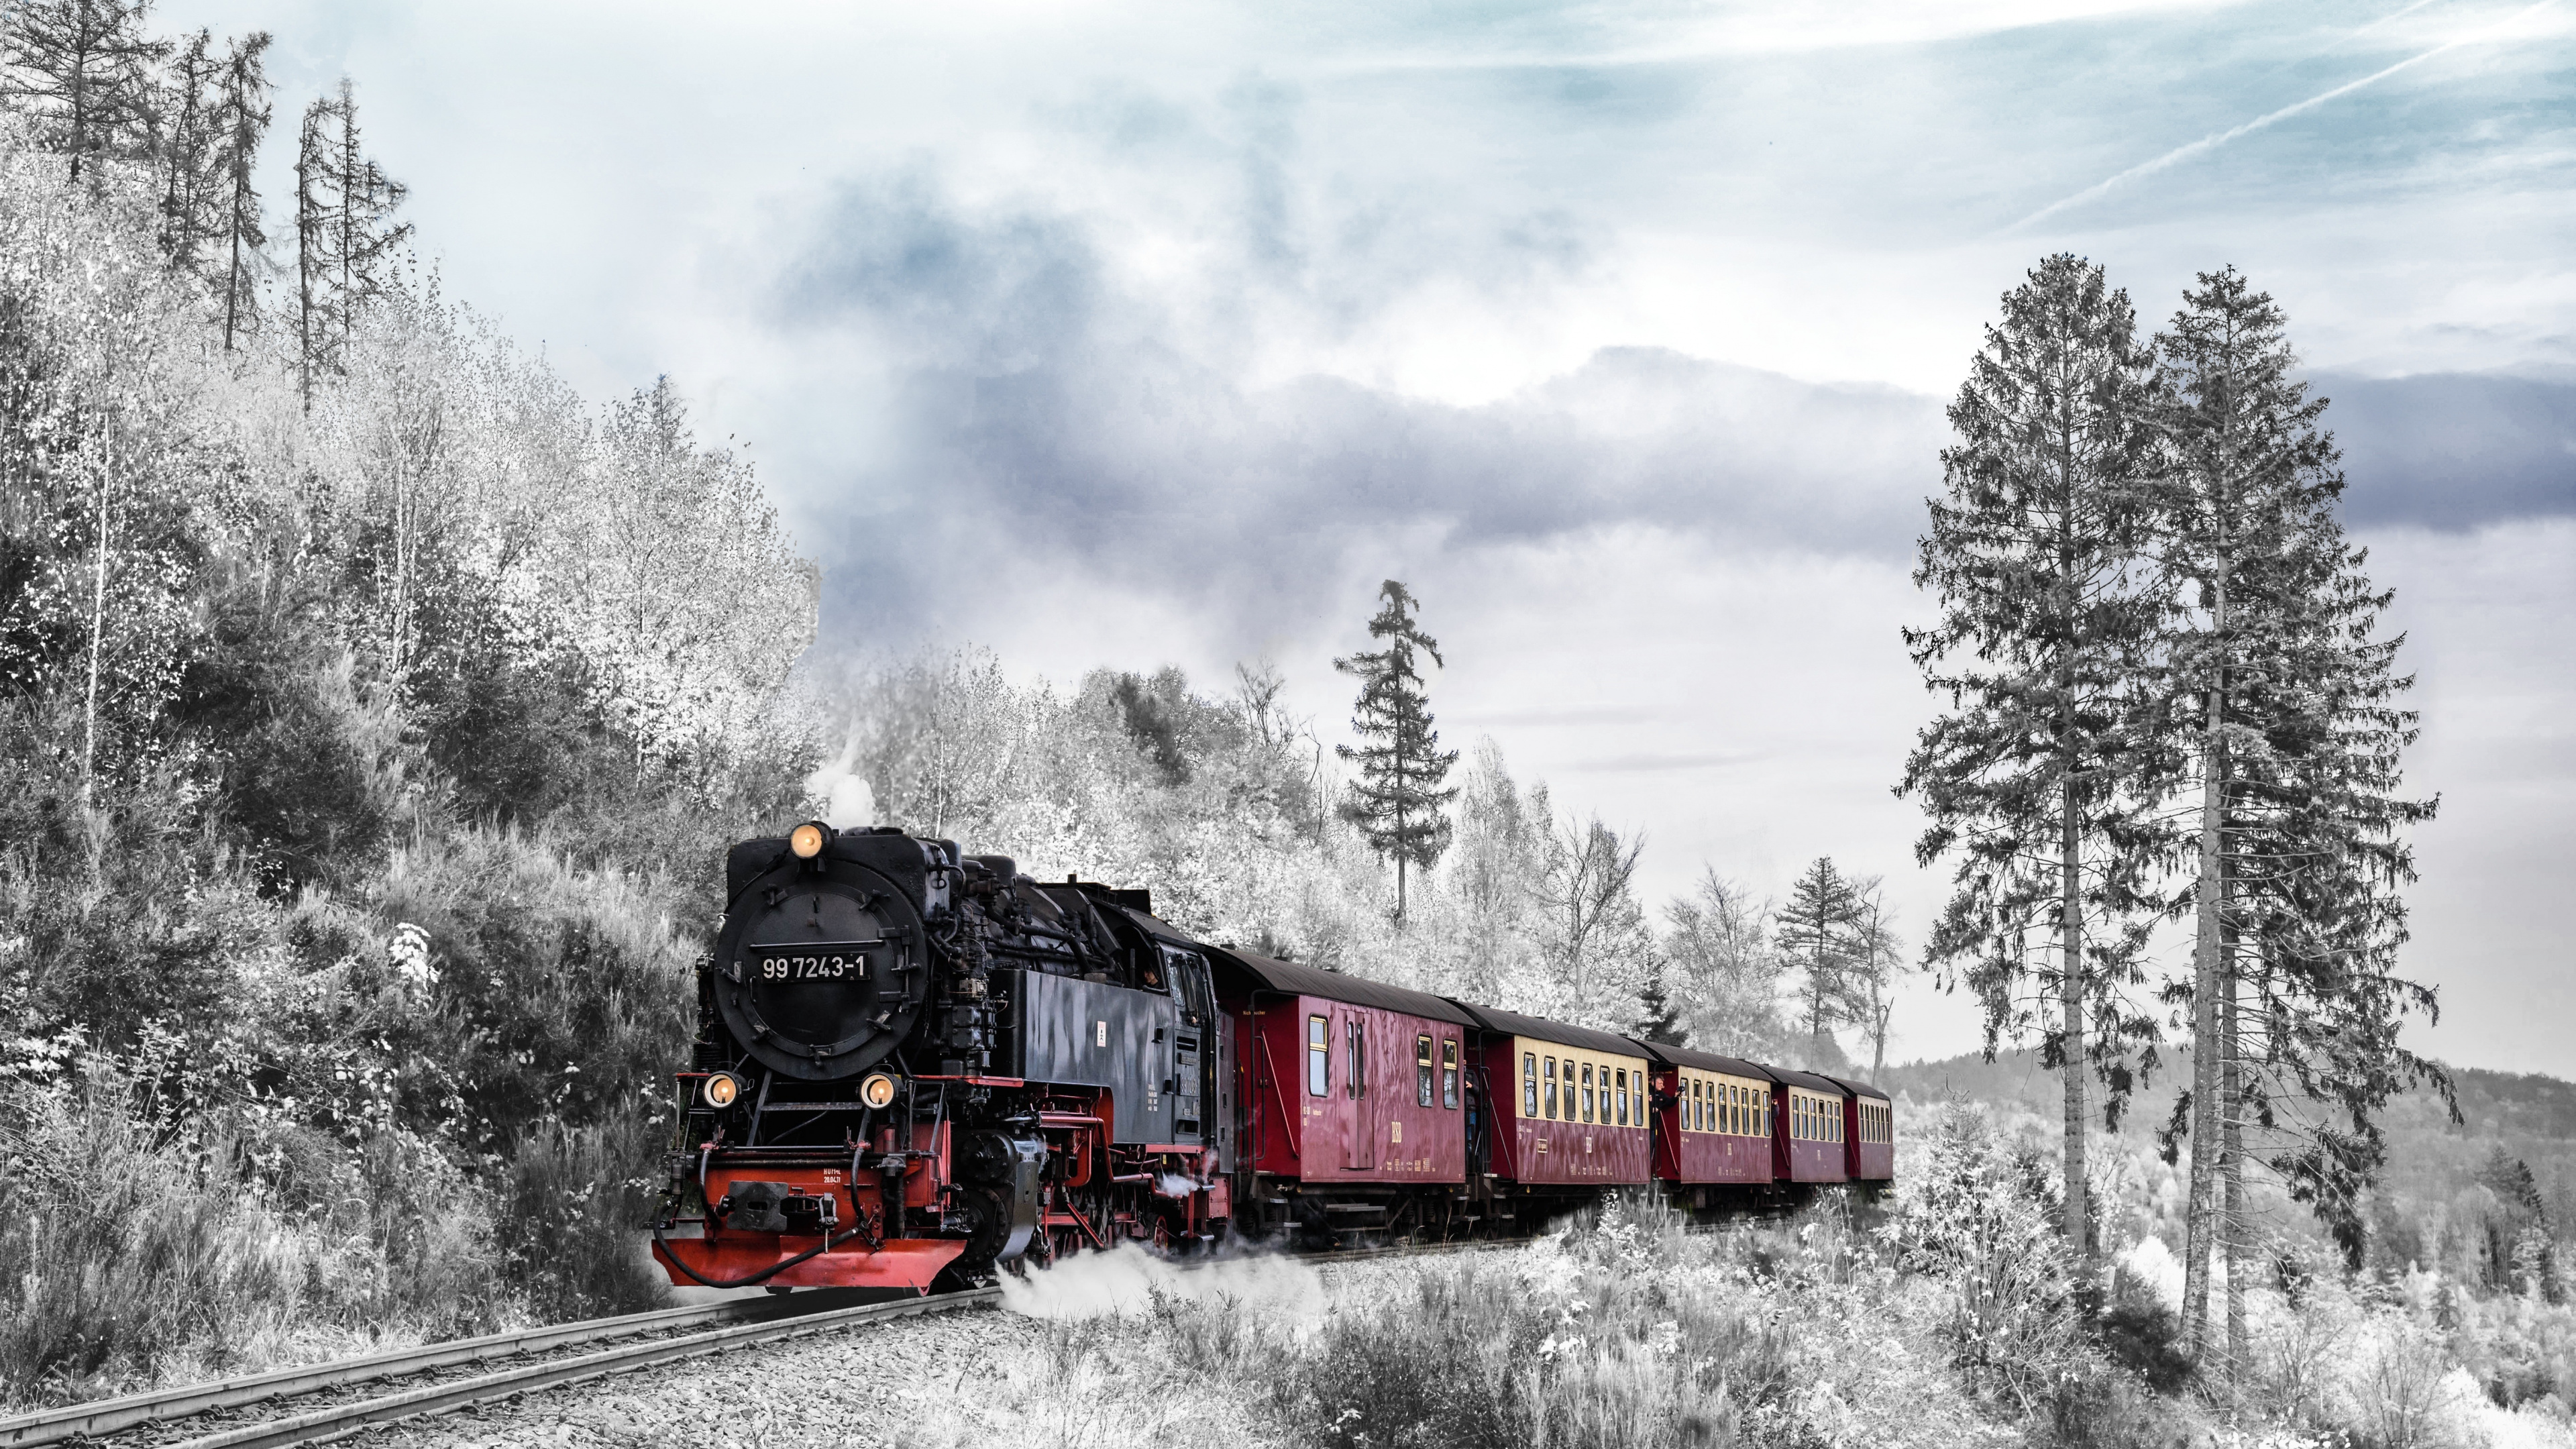 火车, 铁路运输, 蒸汽机车, 冬天, 是火车站 壁纸 3840x2160 允许